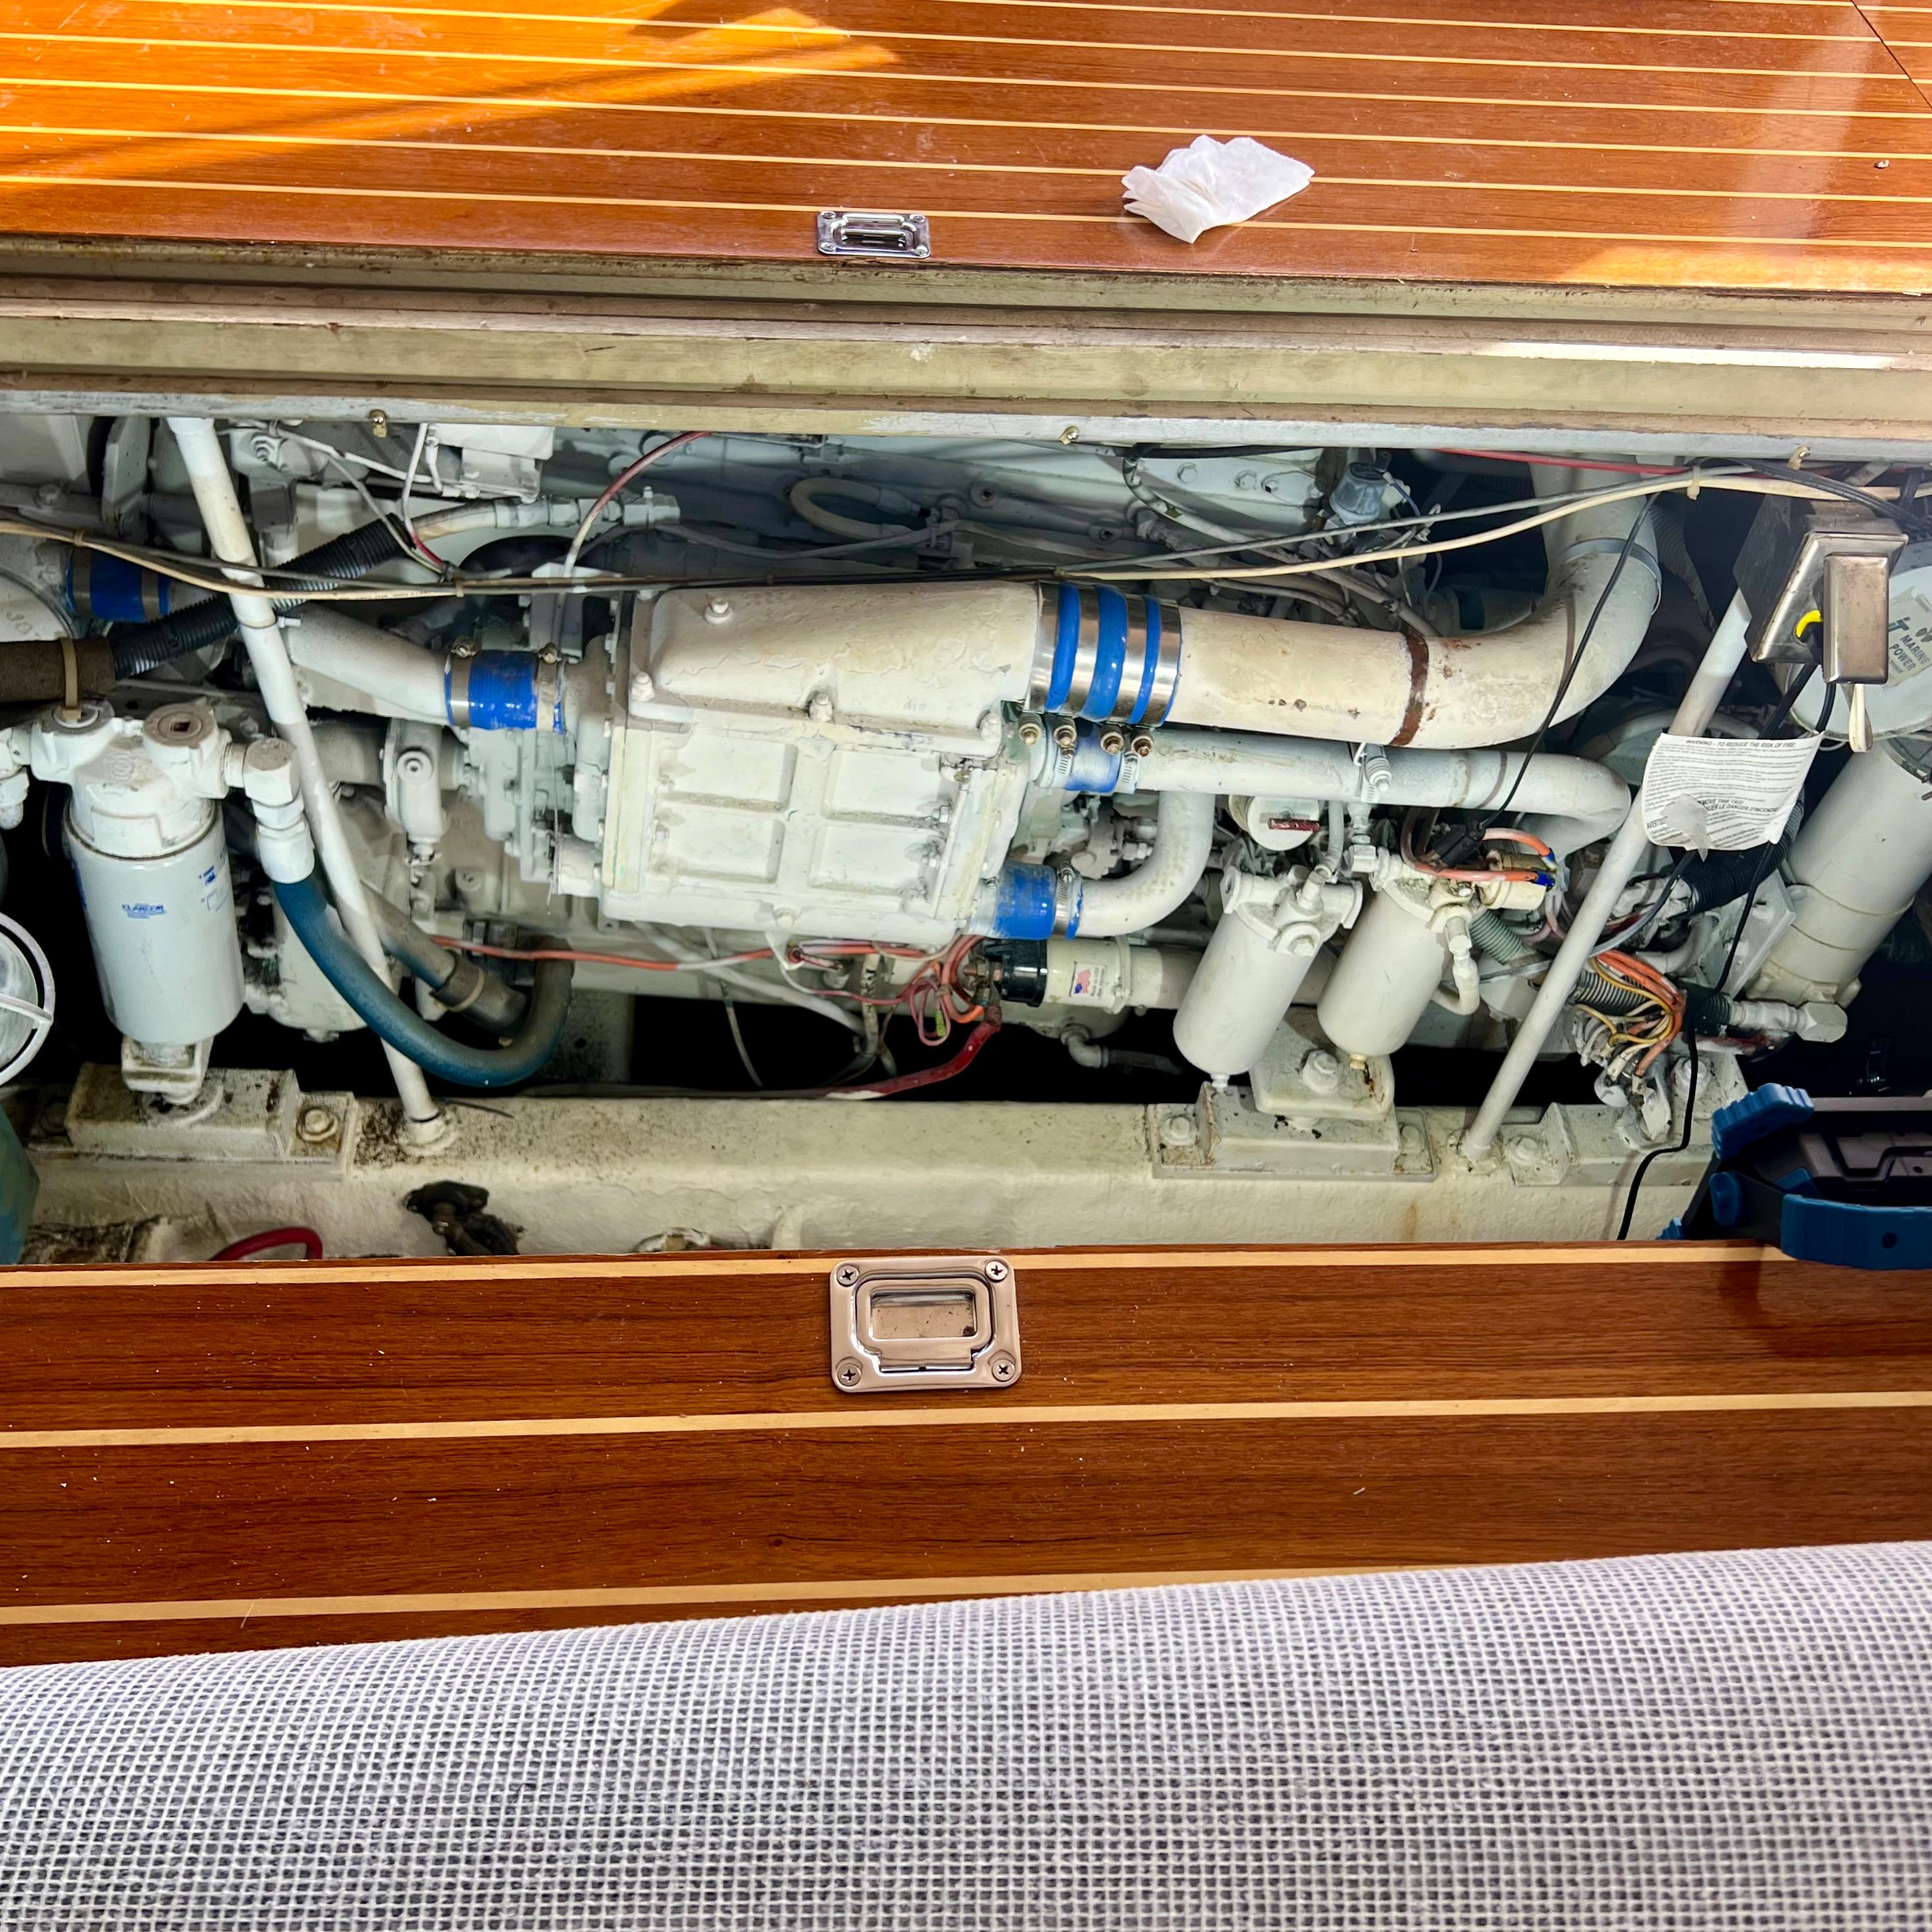 Cummings engine starboard